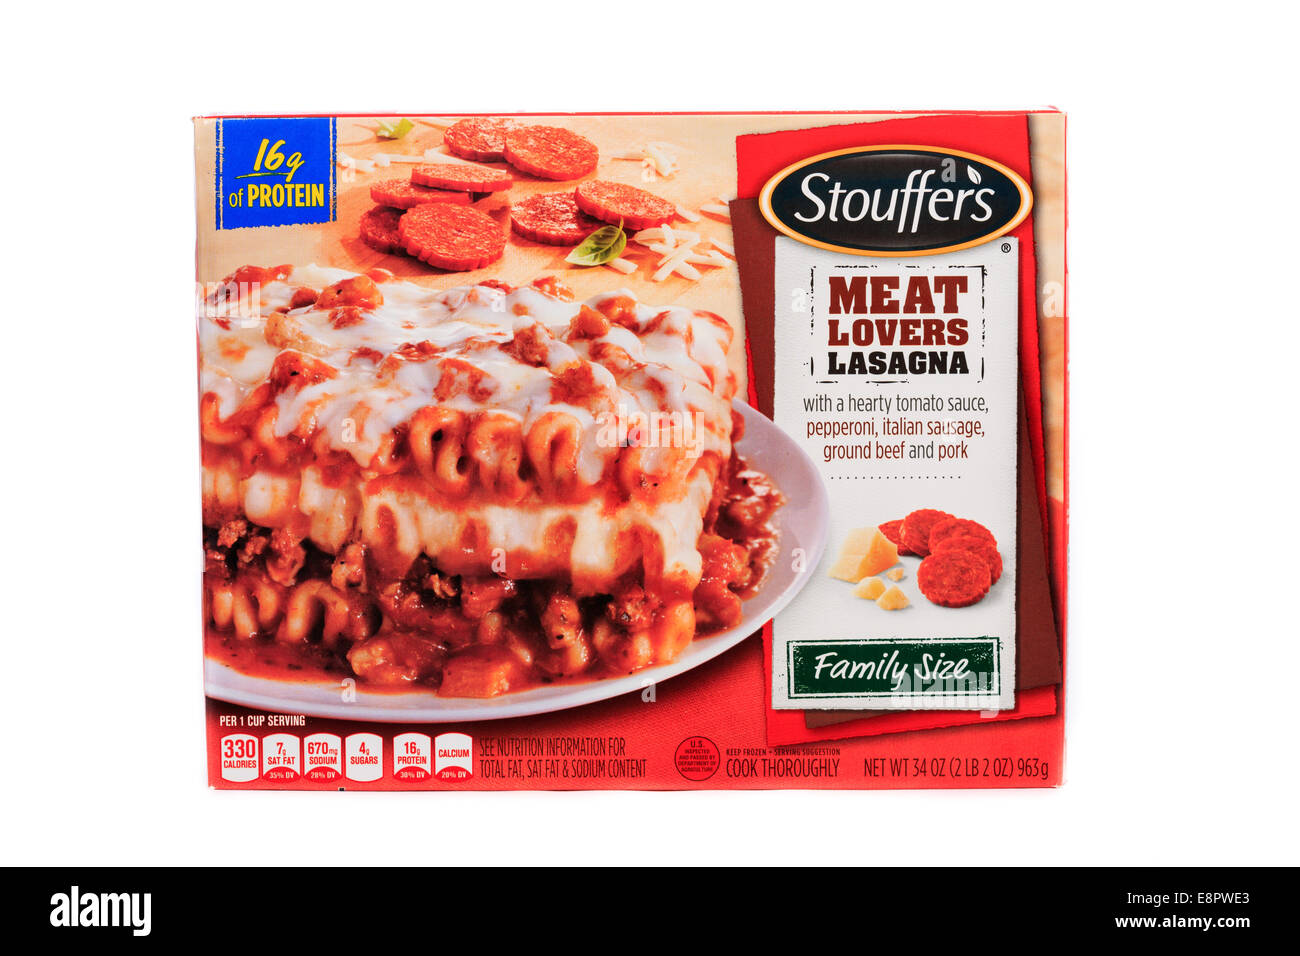 La marque Nestlé Stouffer's Amateurs de viande de taille familiale repas  prêt Lasagne congelée préparée Photo Stock - Alamy